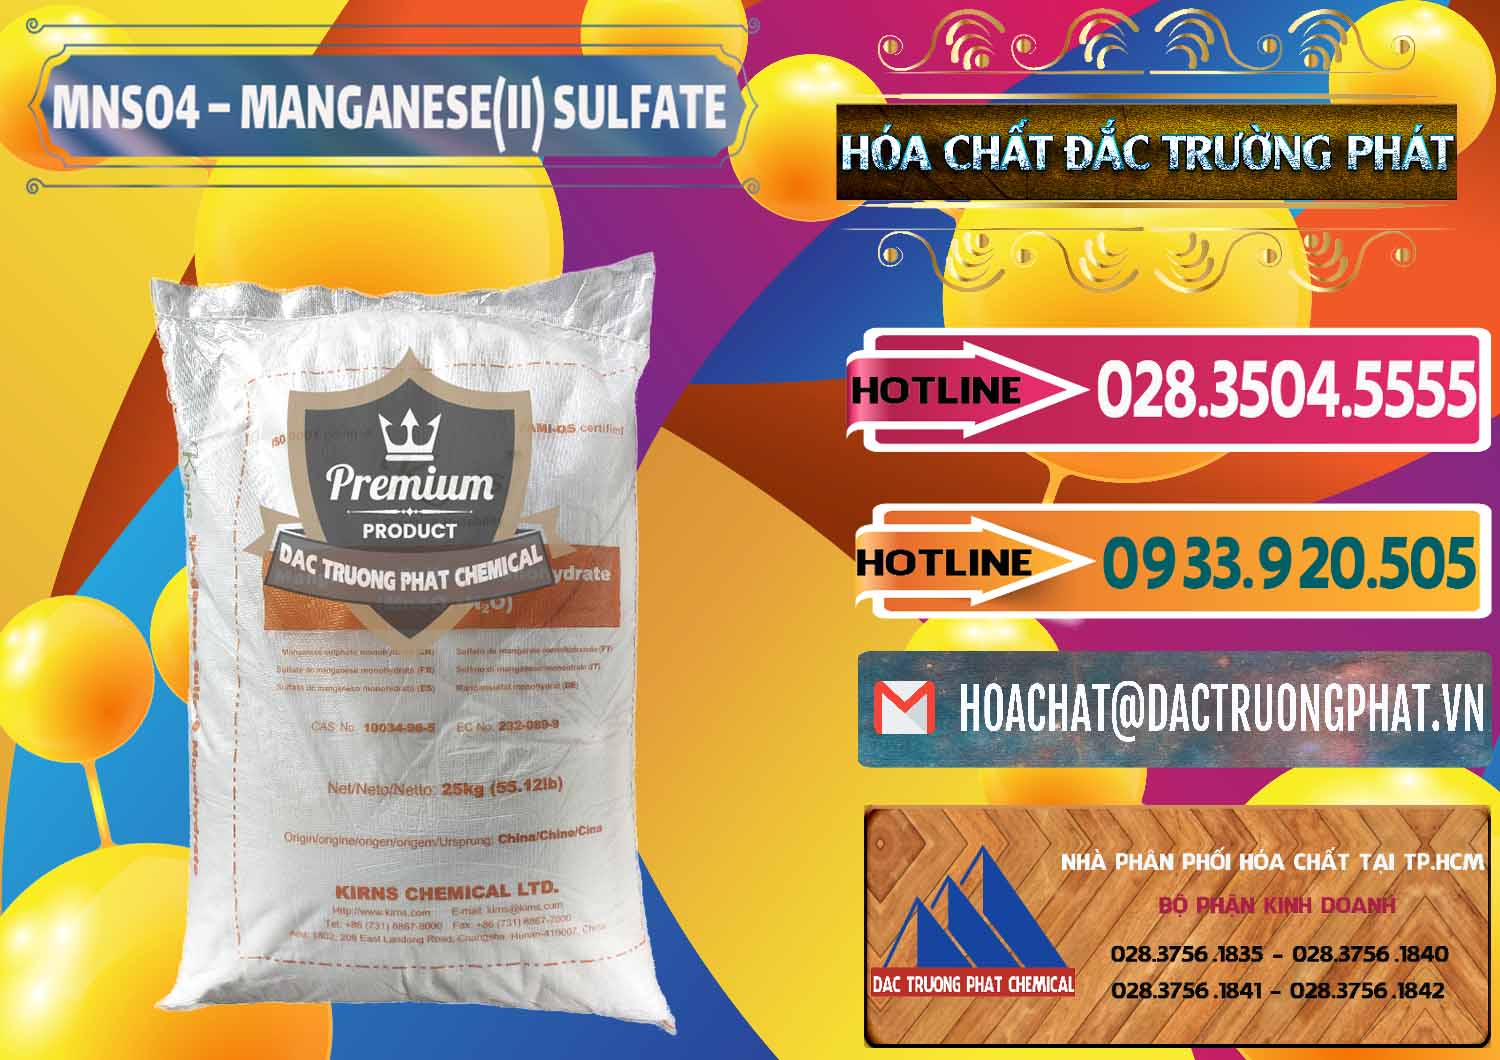 Đơn vị chuyên kinh doanh & bán MNSO4 – Manganese (II) Sulfate Kirns Trung Quốc China - 0095 - Đơn vị bán _ phân phối hóa chất tại TP.HCM - dactruongphat.vn